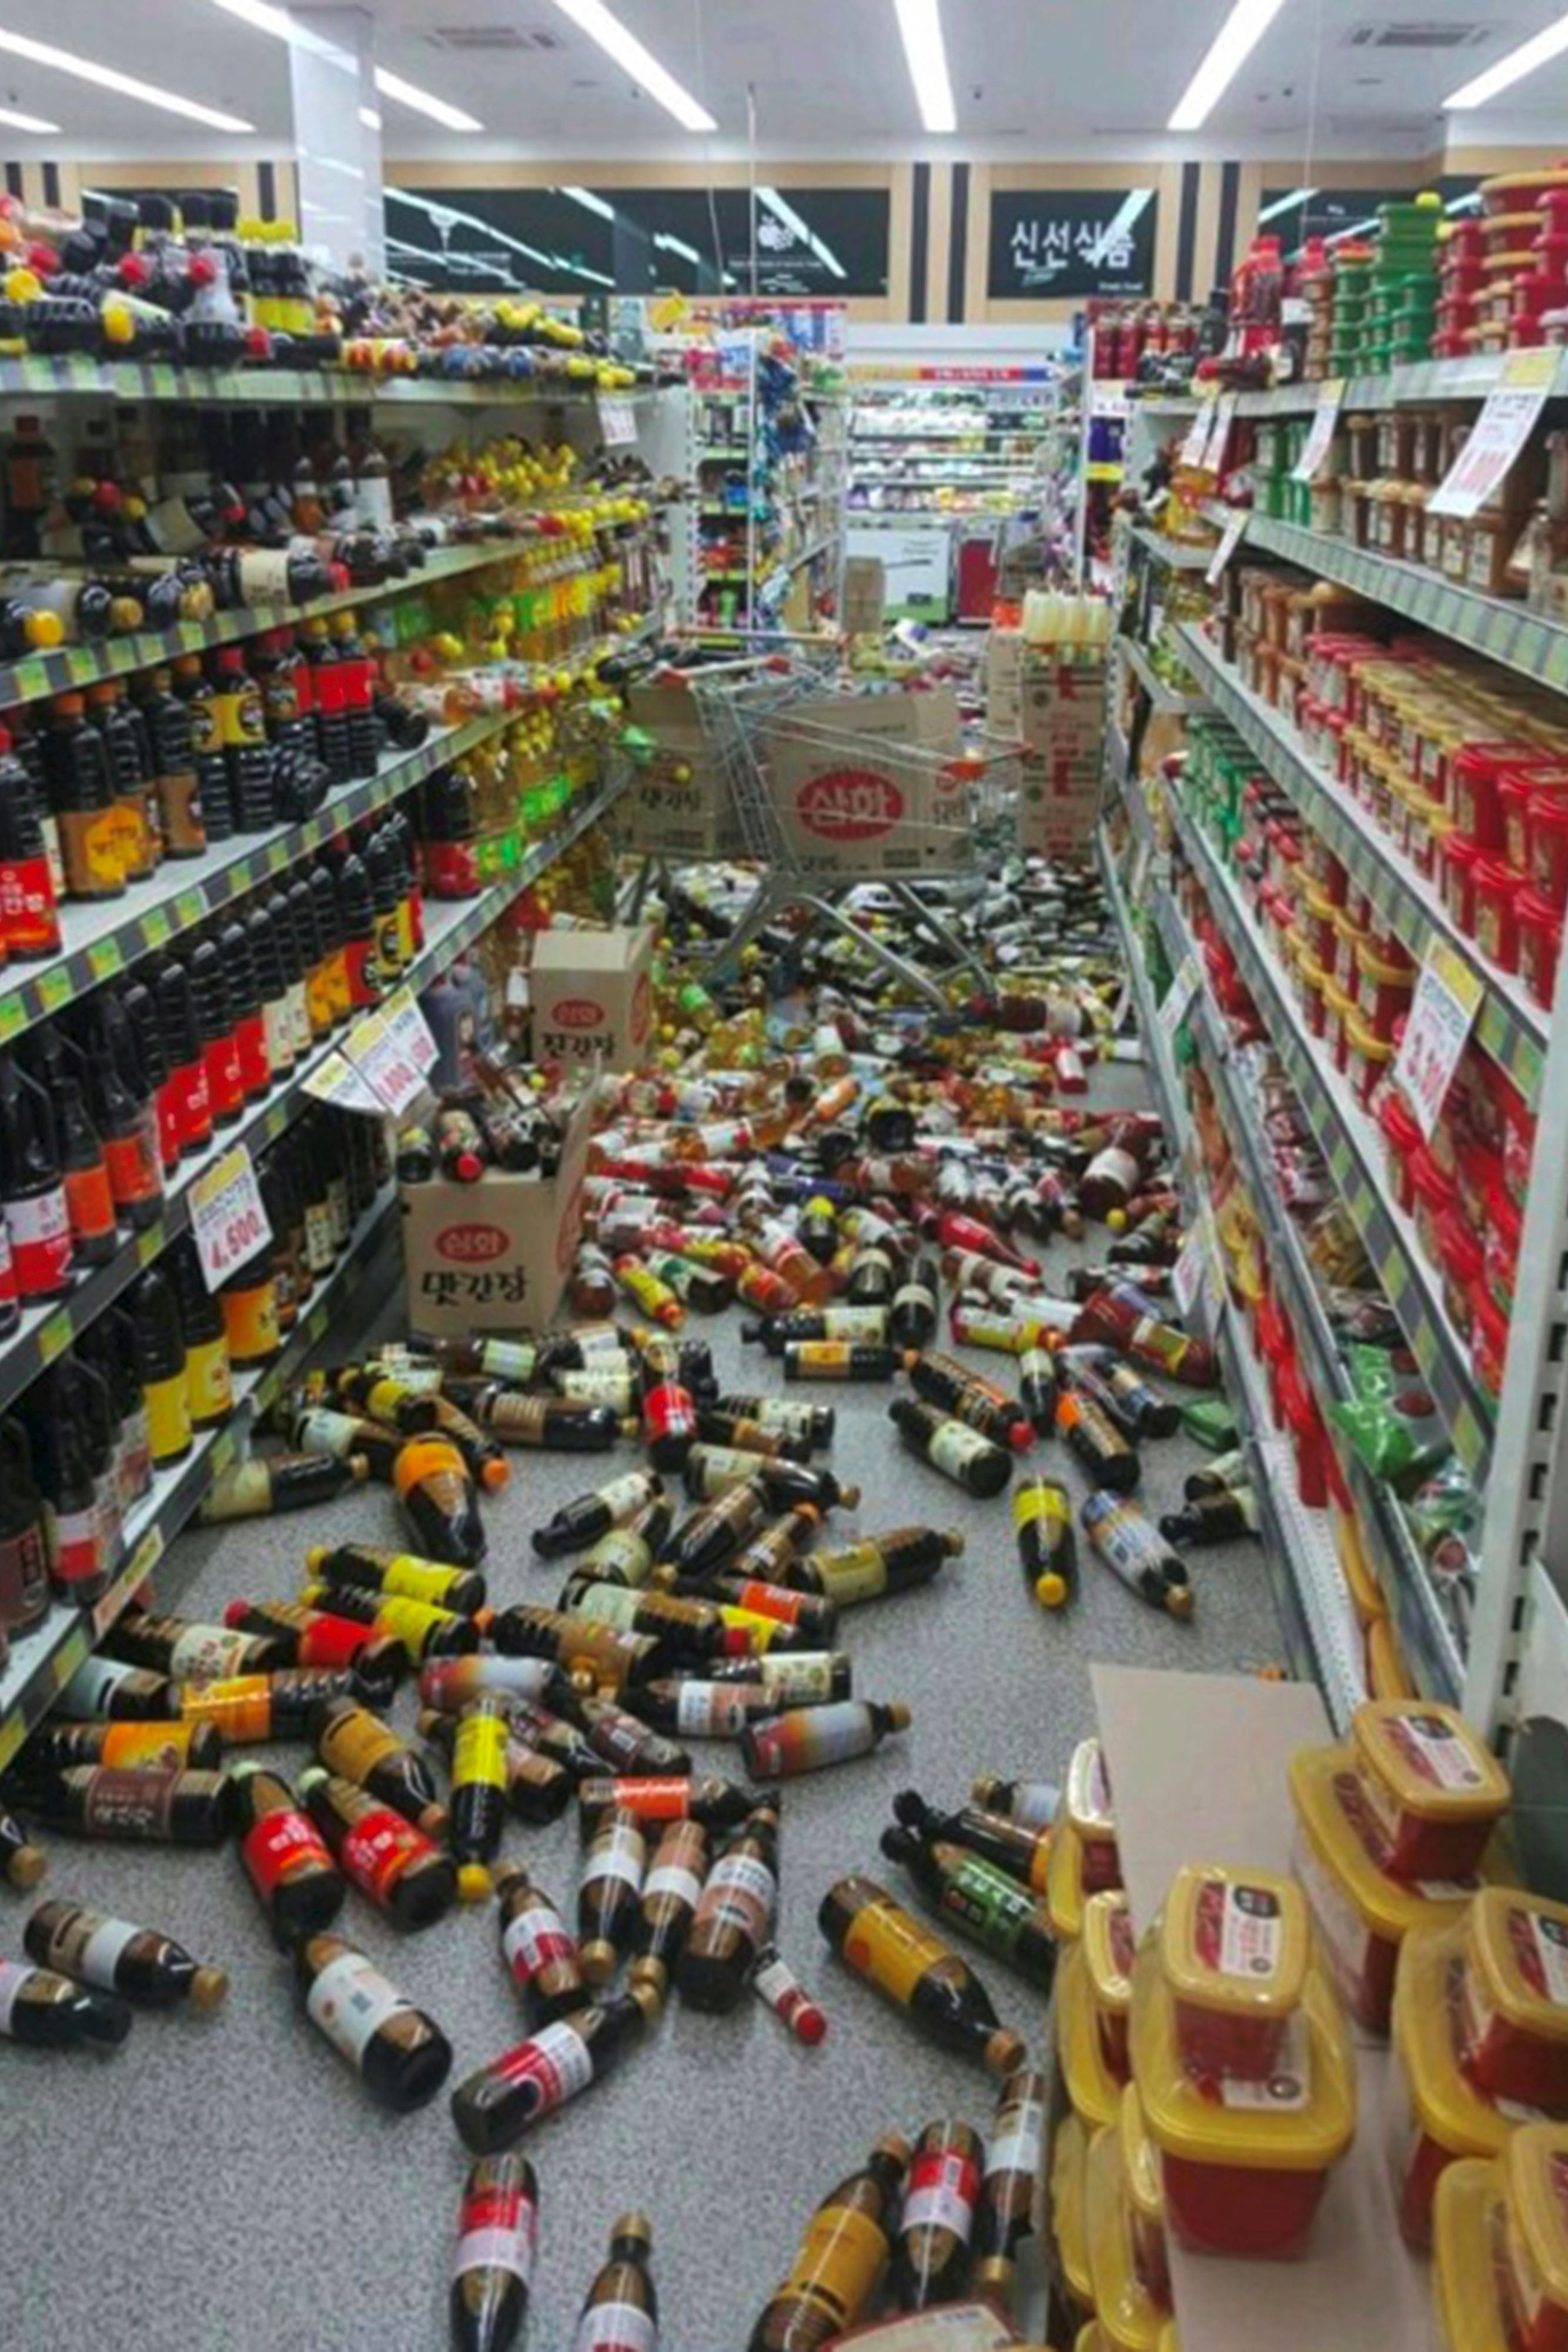 فوضى فى أحد المتاجر بسبب زلزال كوريا الجنوبية